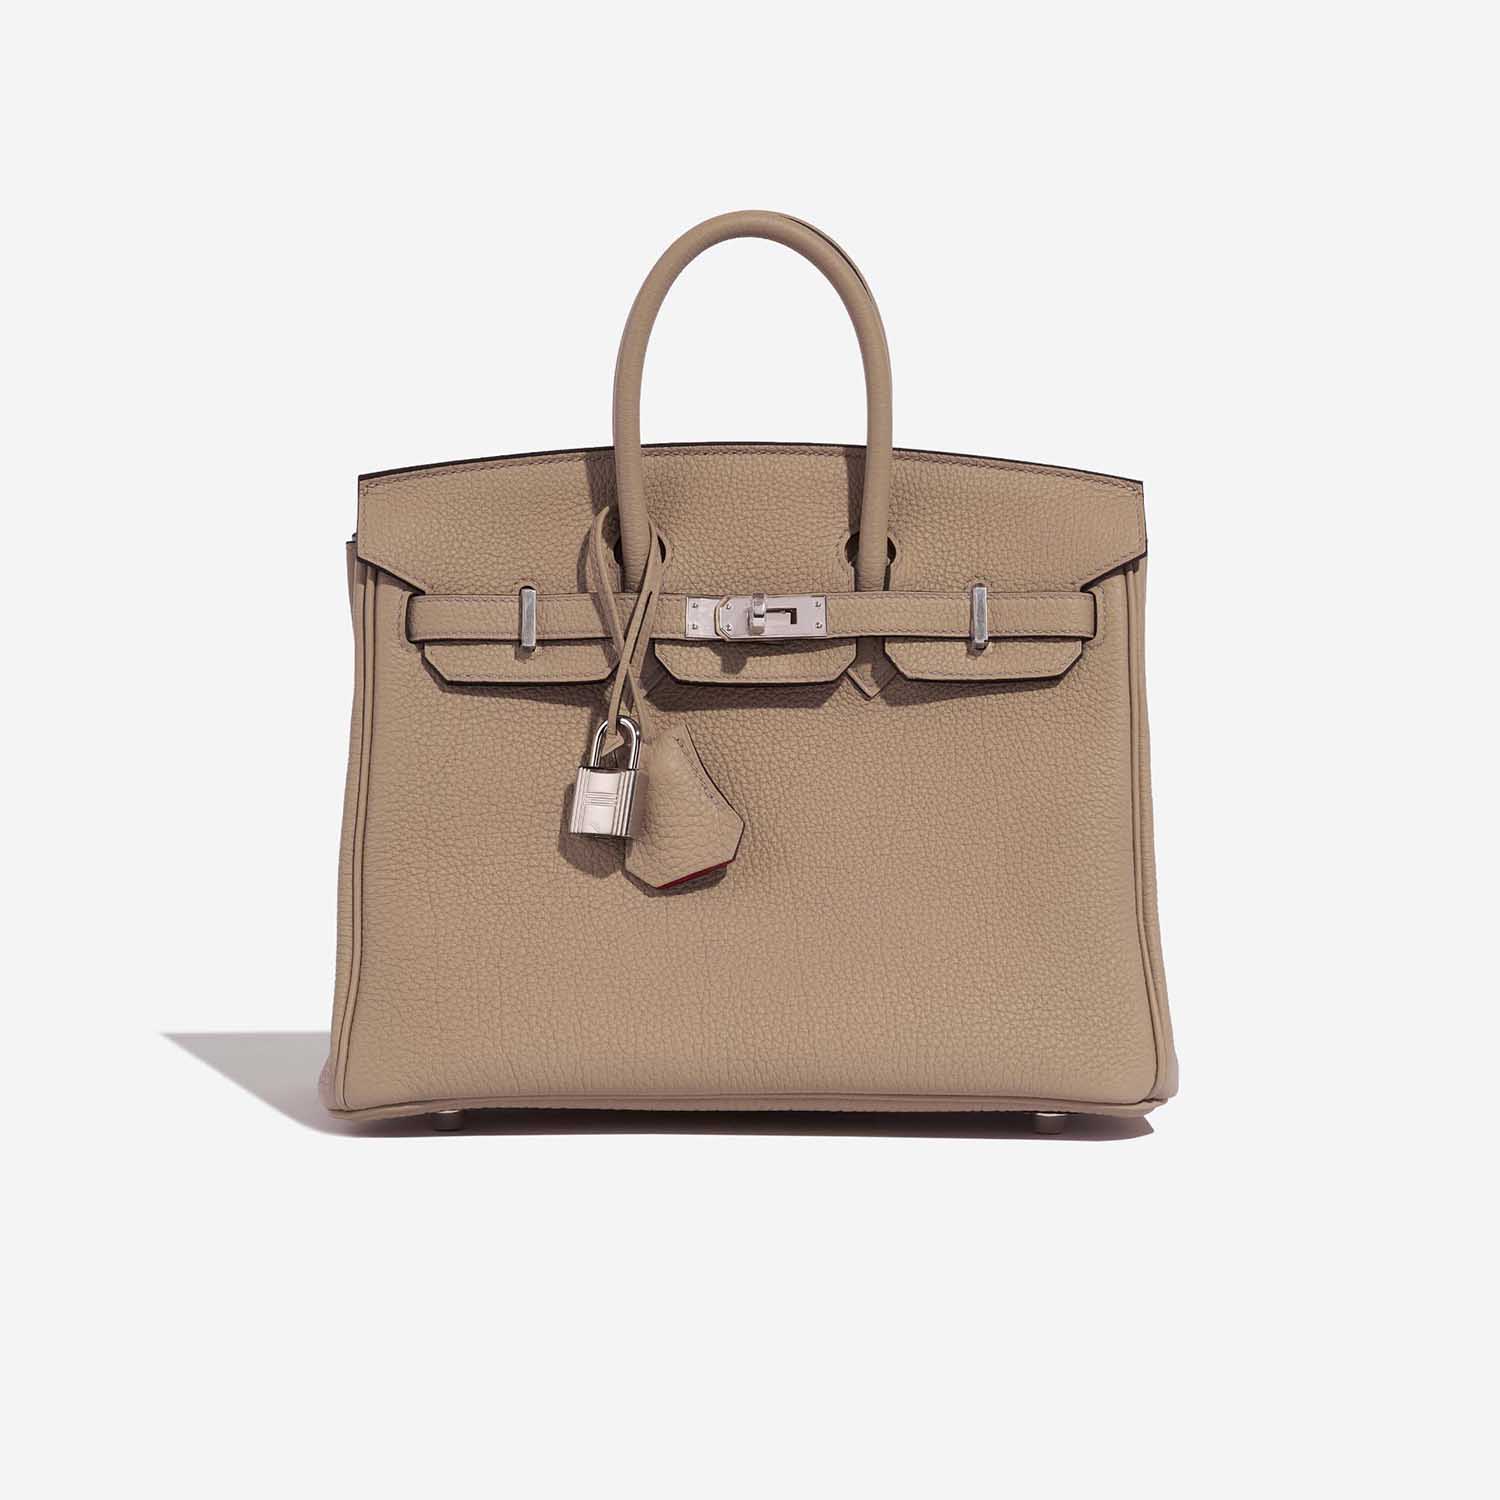 Hermès Birkin 25 Trench-Bougainvillier Front | Verkaufen Sie Ihre Designer-Tasche auf Saclab.com